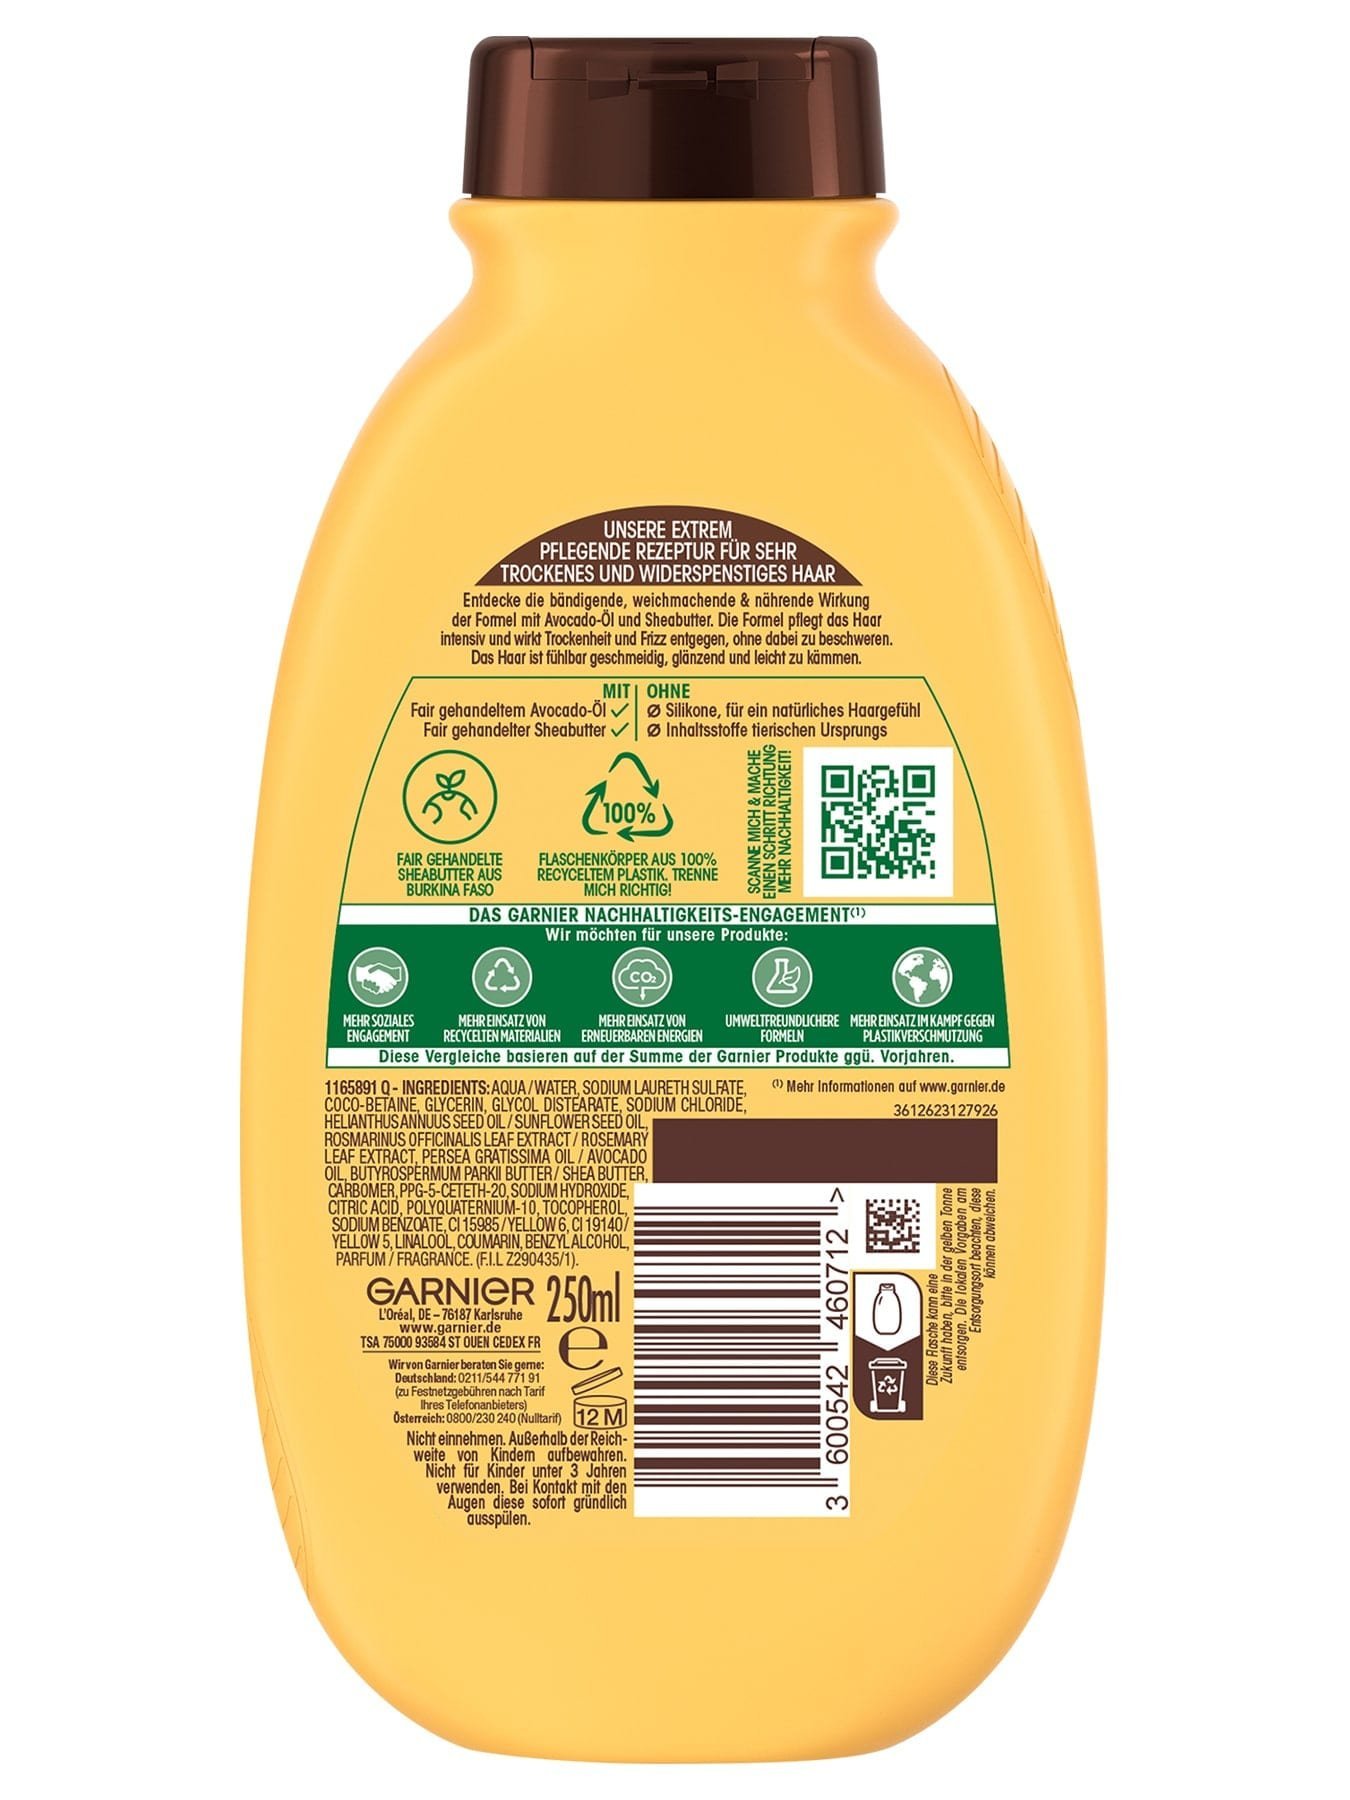 Wahre Schätze Intensiv Nährendes Shampoo Avocado-Öl & Sheabutter - Produkt Rückseite